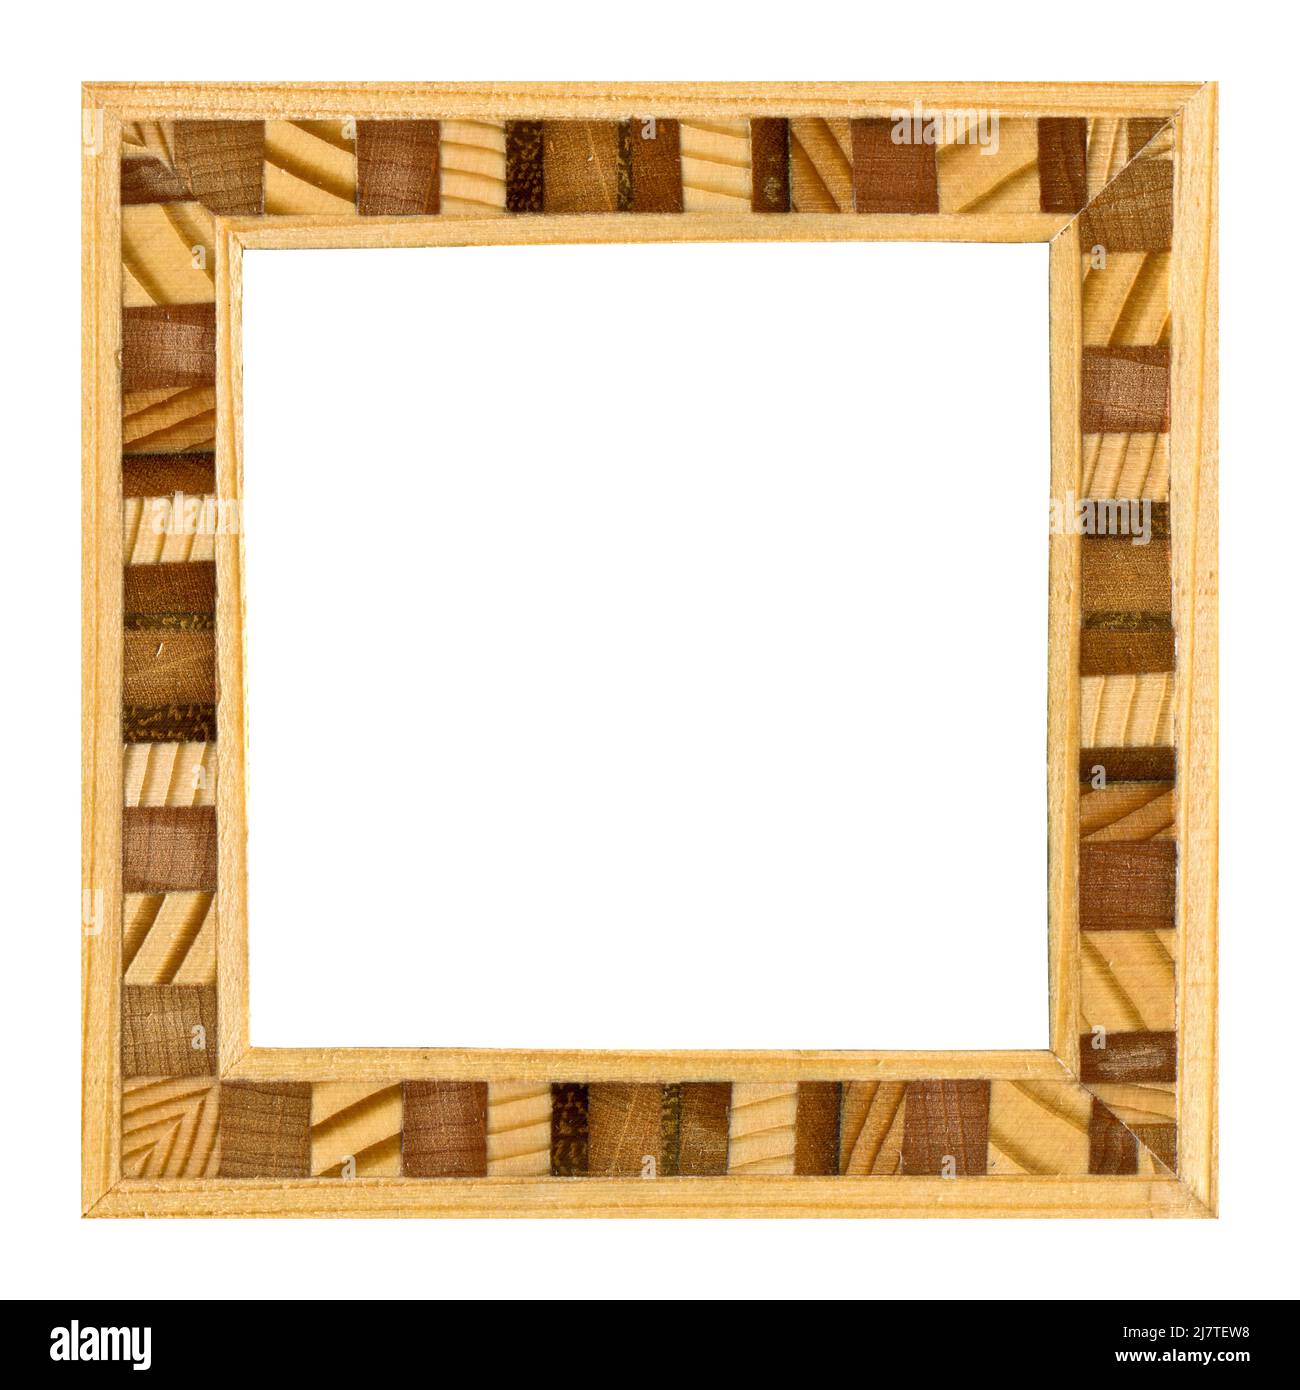 Cadre de marqueterie en bois, cadre en bois fait d'une combinaison de  différents bois, isolé sur un fond blanc Photo Stock - Alamy